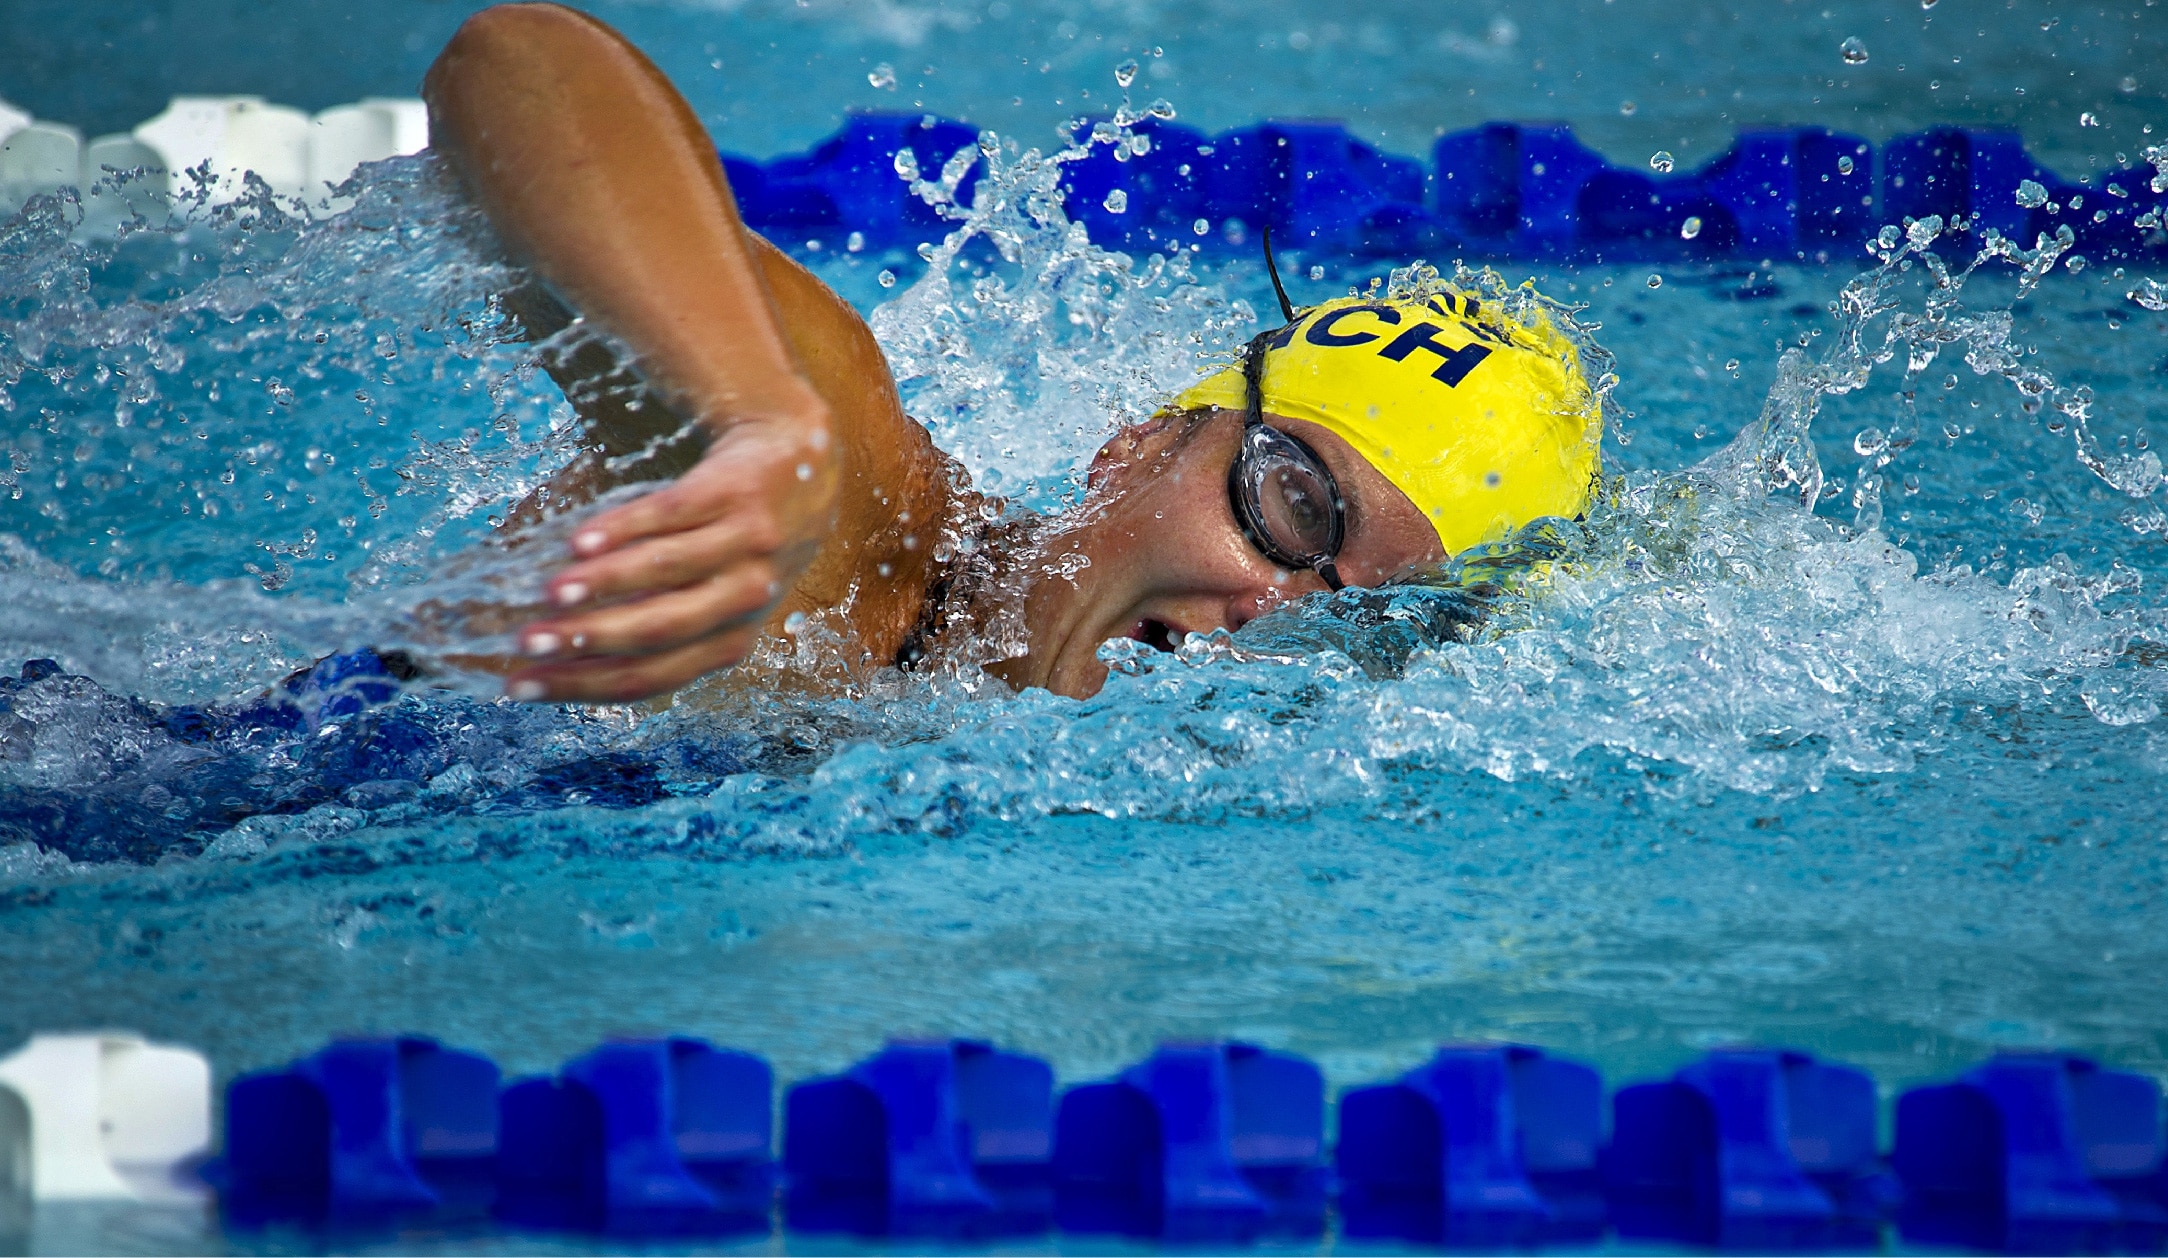 Use técnicas de respiração e melhore o desempenho na natação